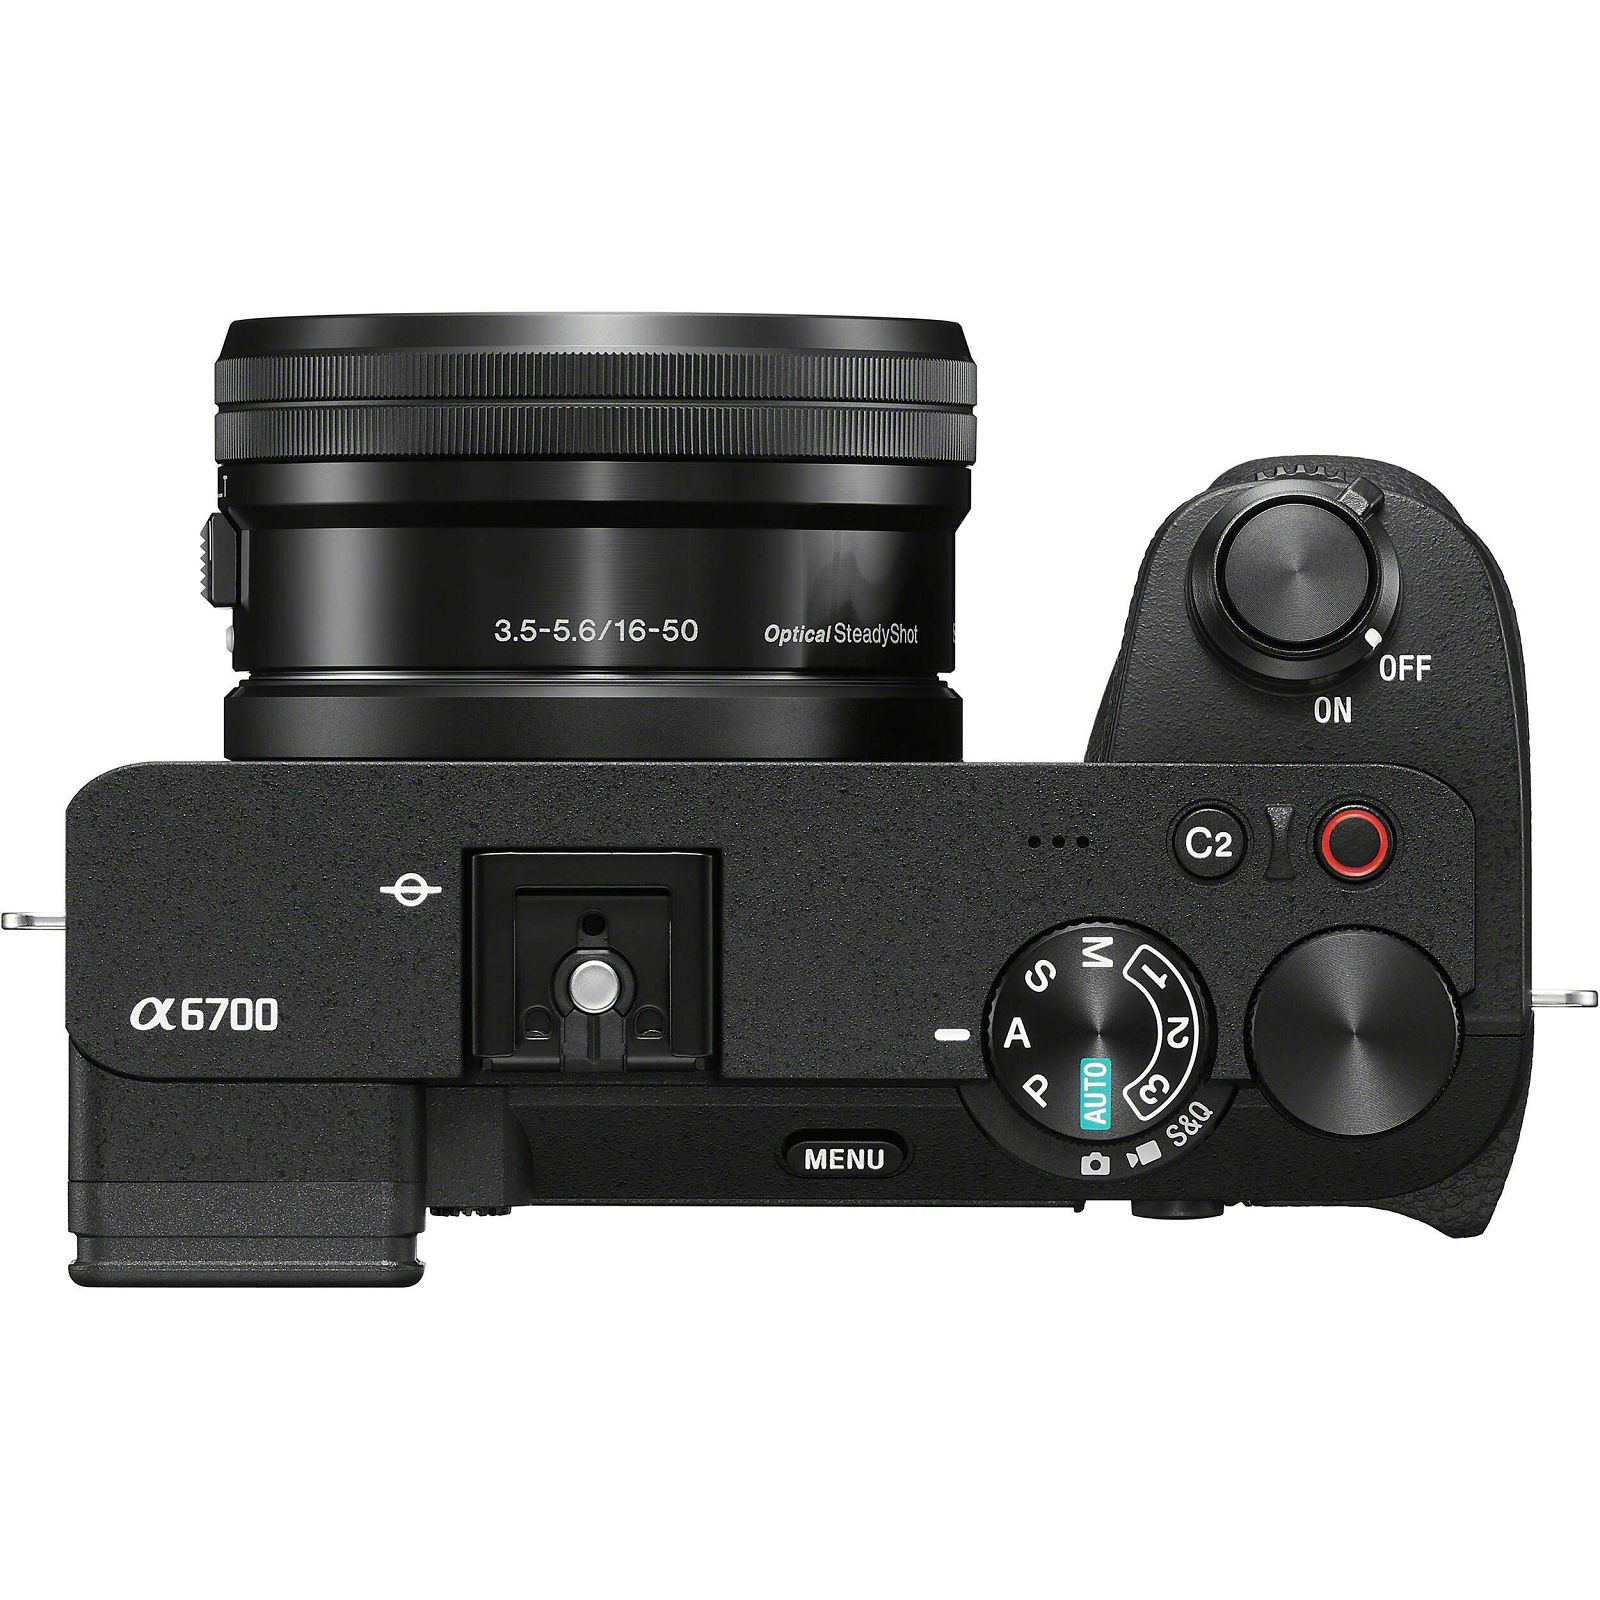 Sony Alpha a6700 + 16-50mm f/3.5-5.6 OSS Lens KIT Black 